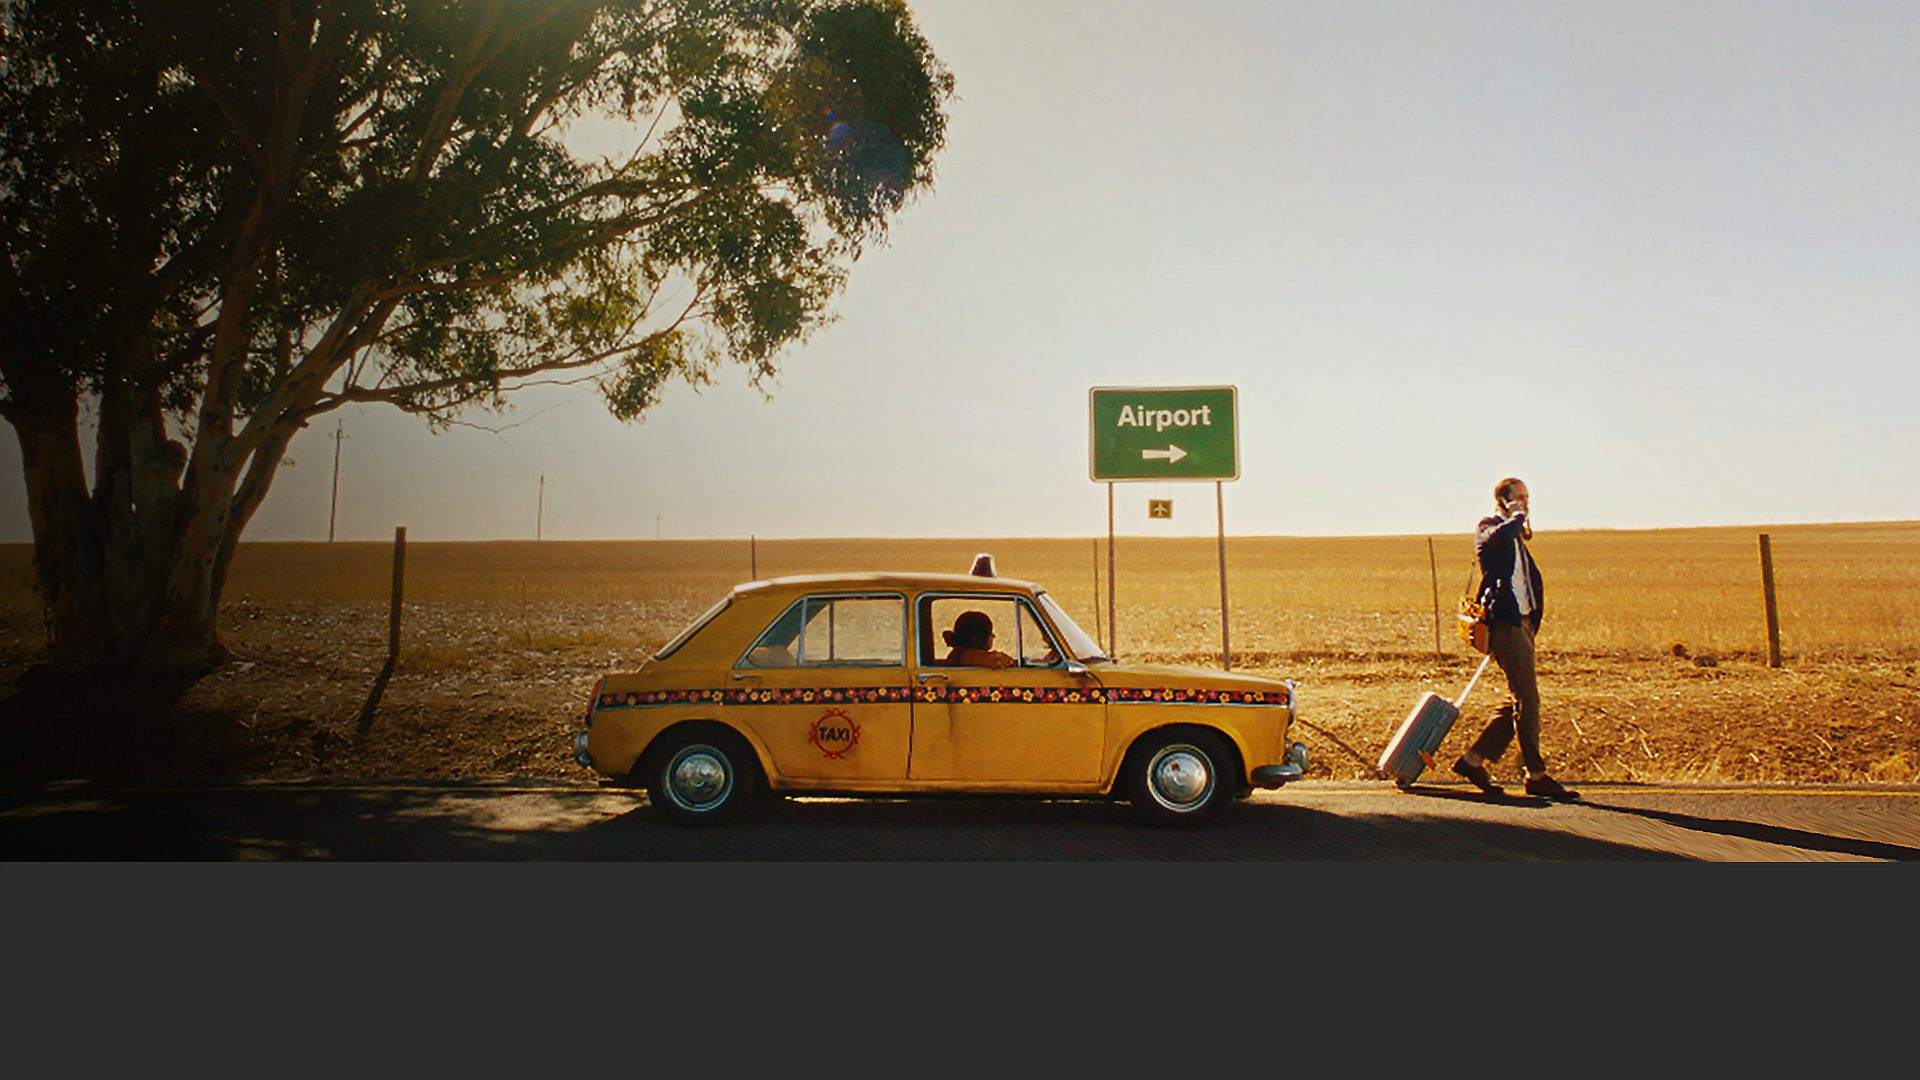 En gul taxi står på en landsväg. En man med en resväska går bort från taxin.